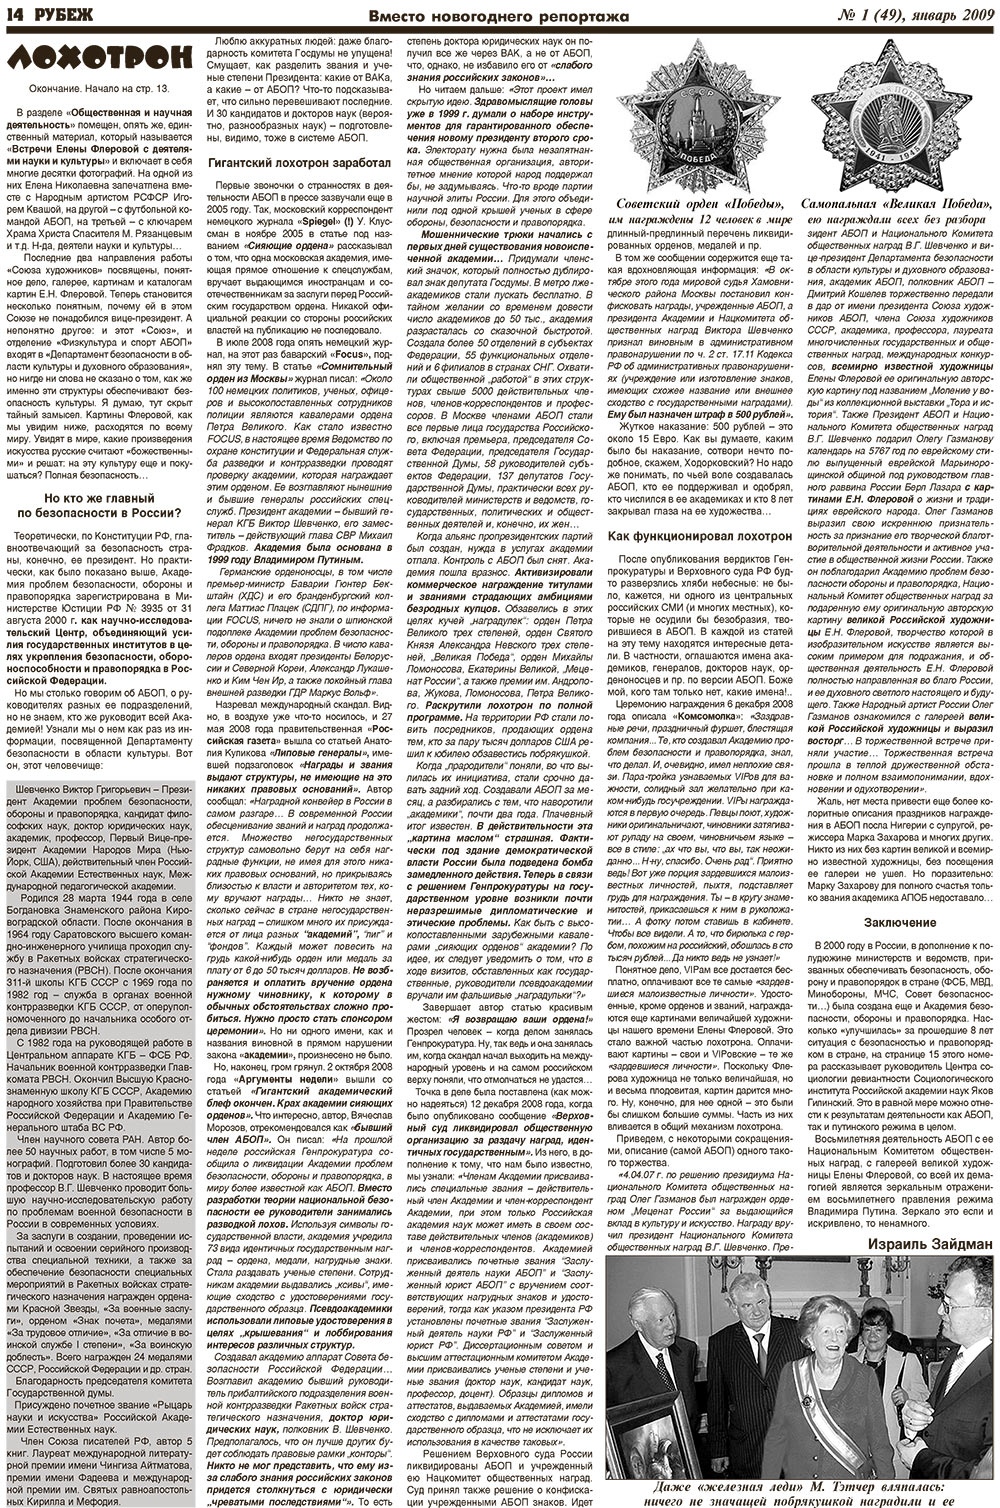 Рубеж (газета). 2009 год, номер 1, стр. 14